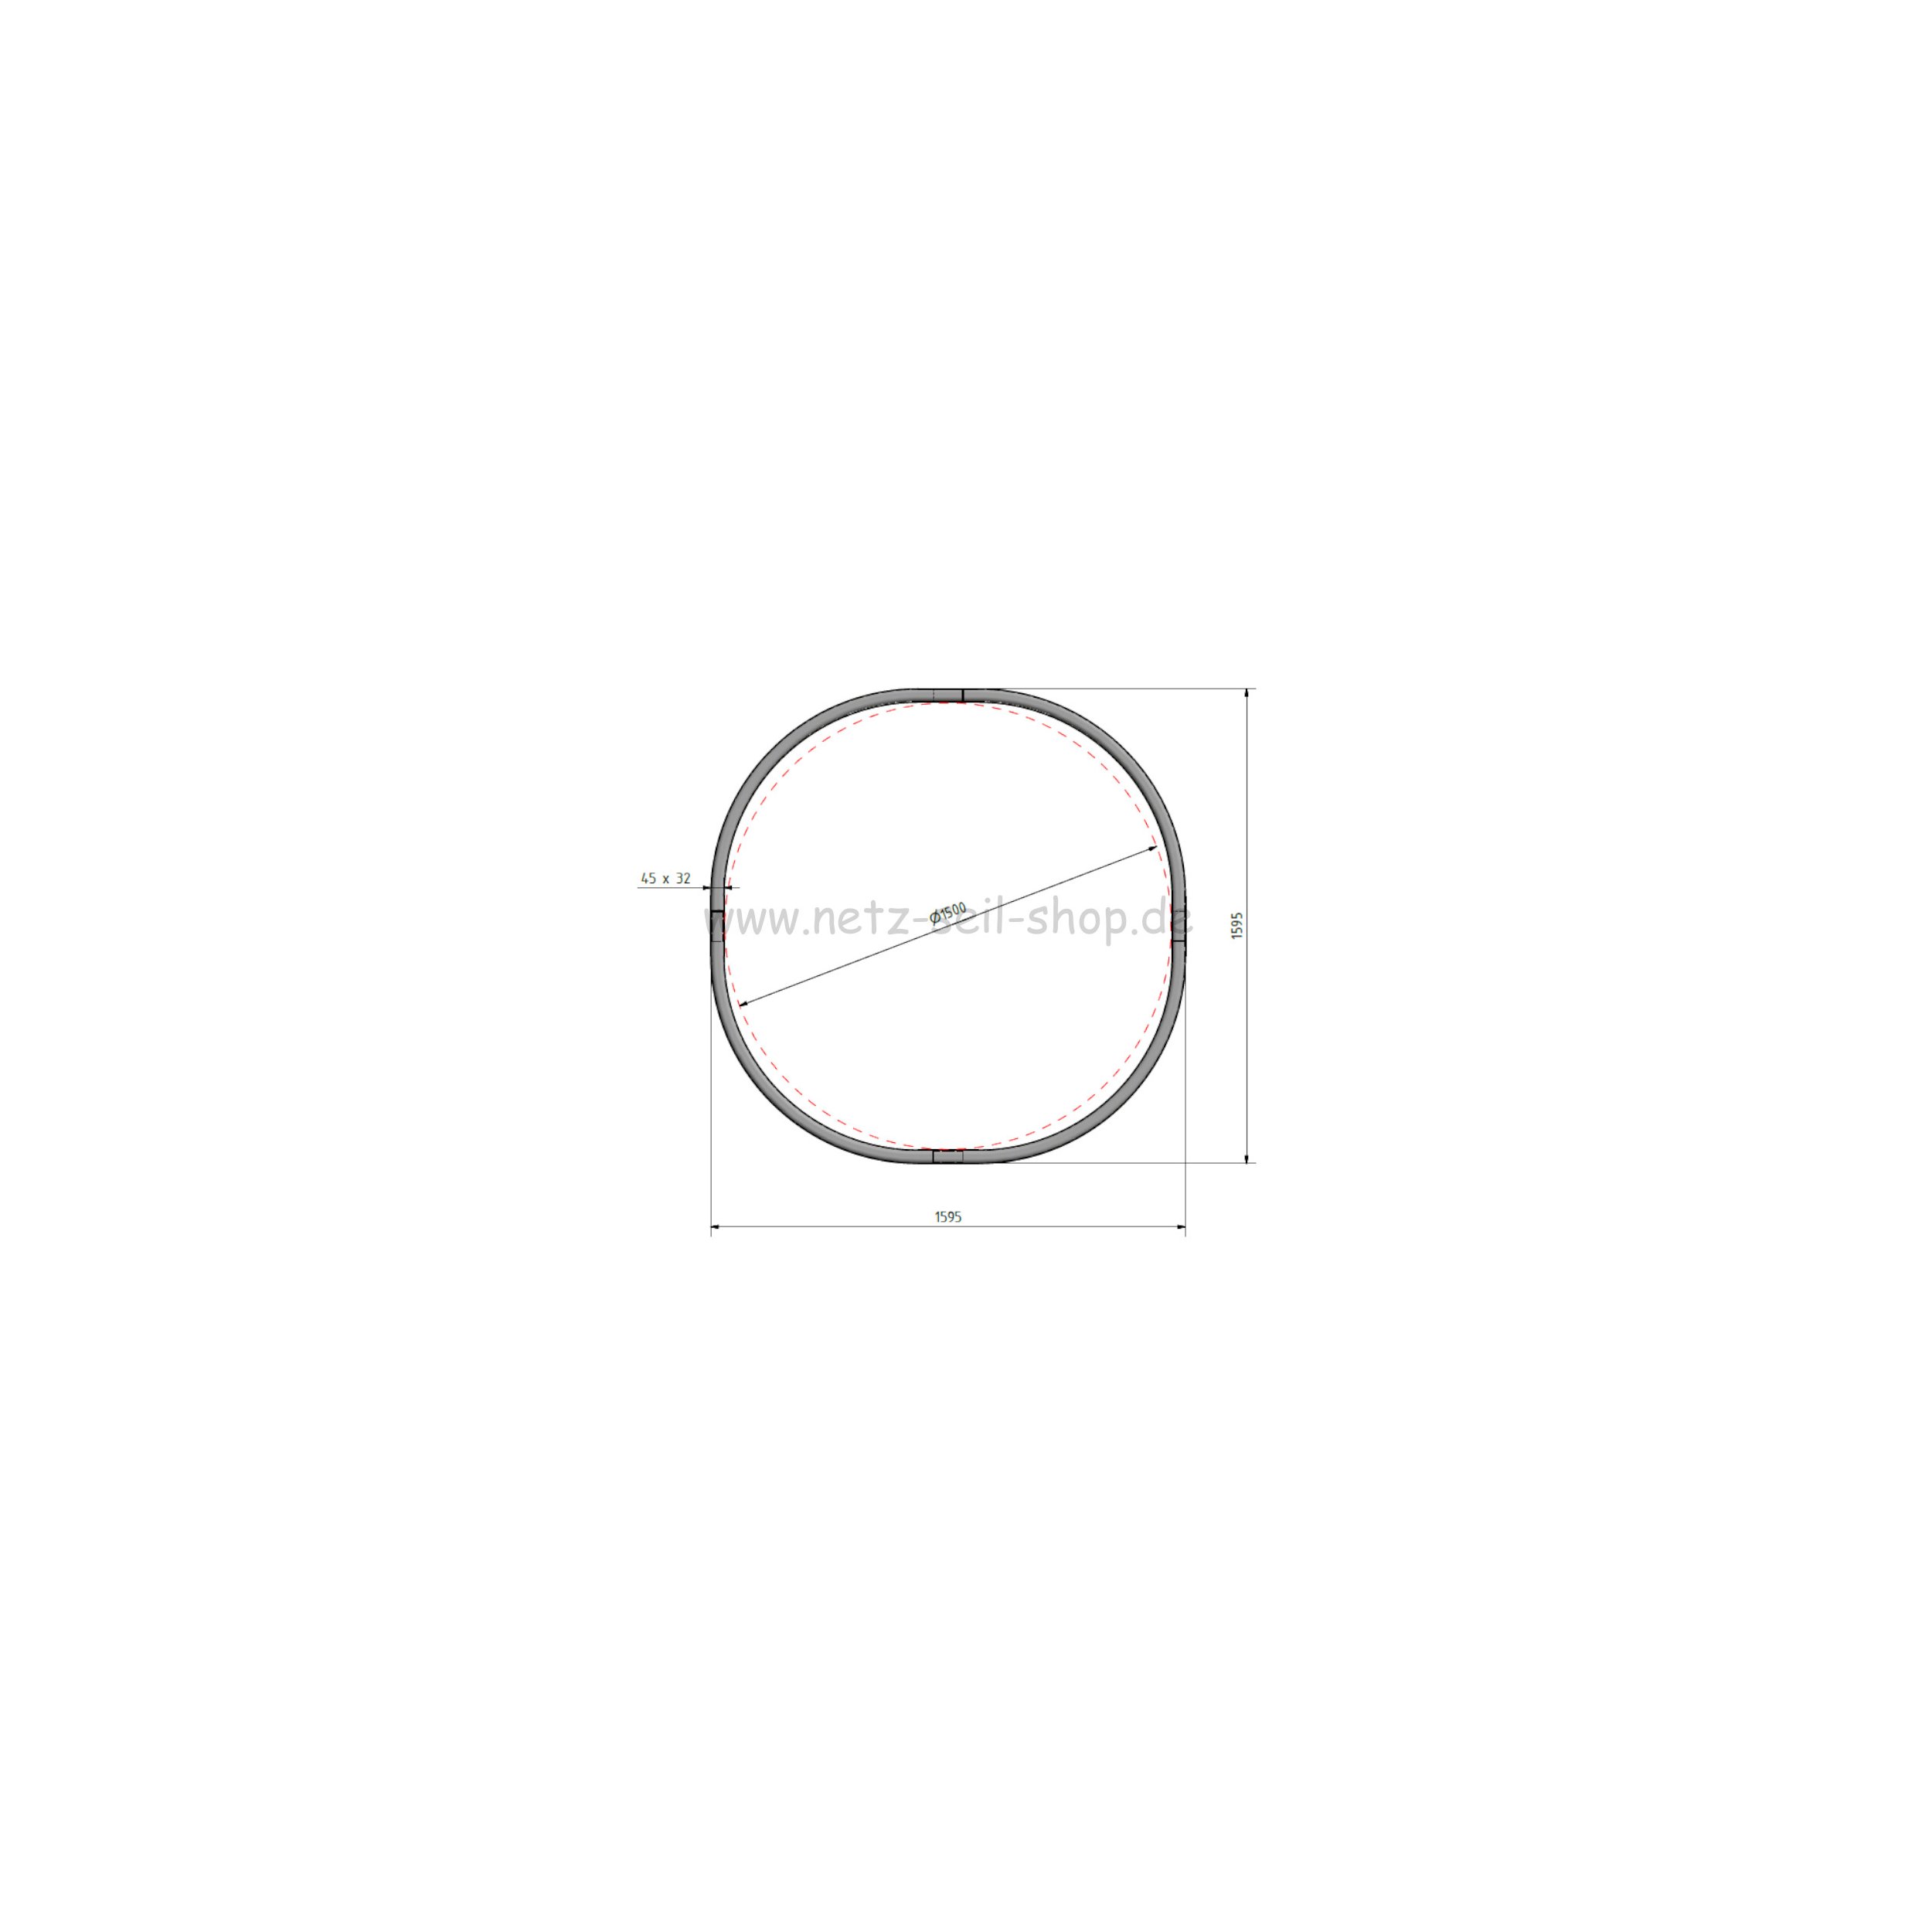 Kopie von Heunetz für Rundballen, 160 cm Durchmesser, Höhe 120cm,  Ø 5 mm Garn, # 80 mm Maschenweite mit PE Ring